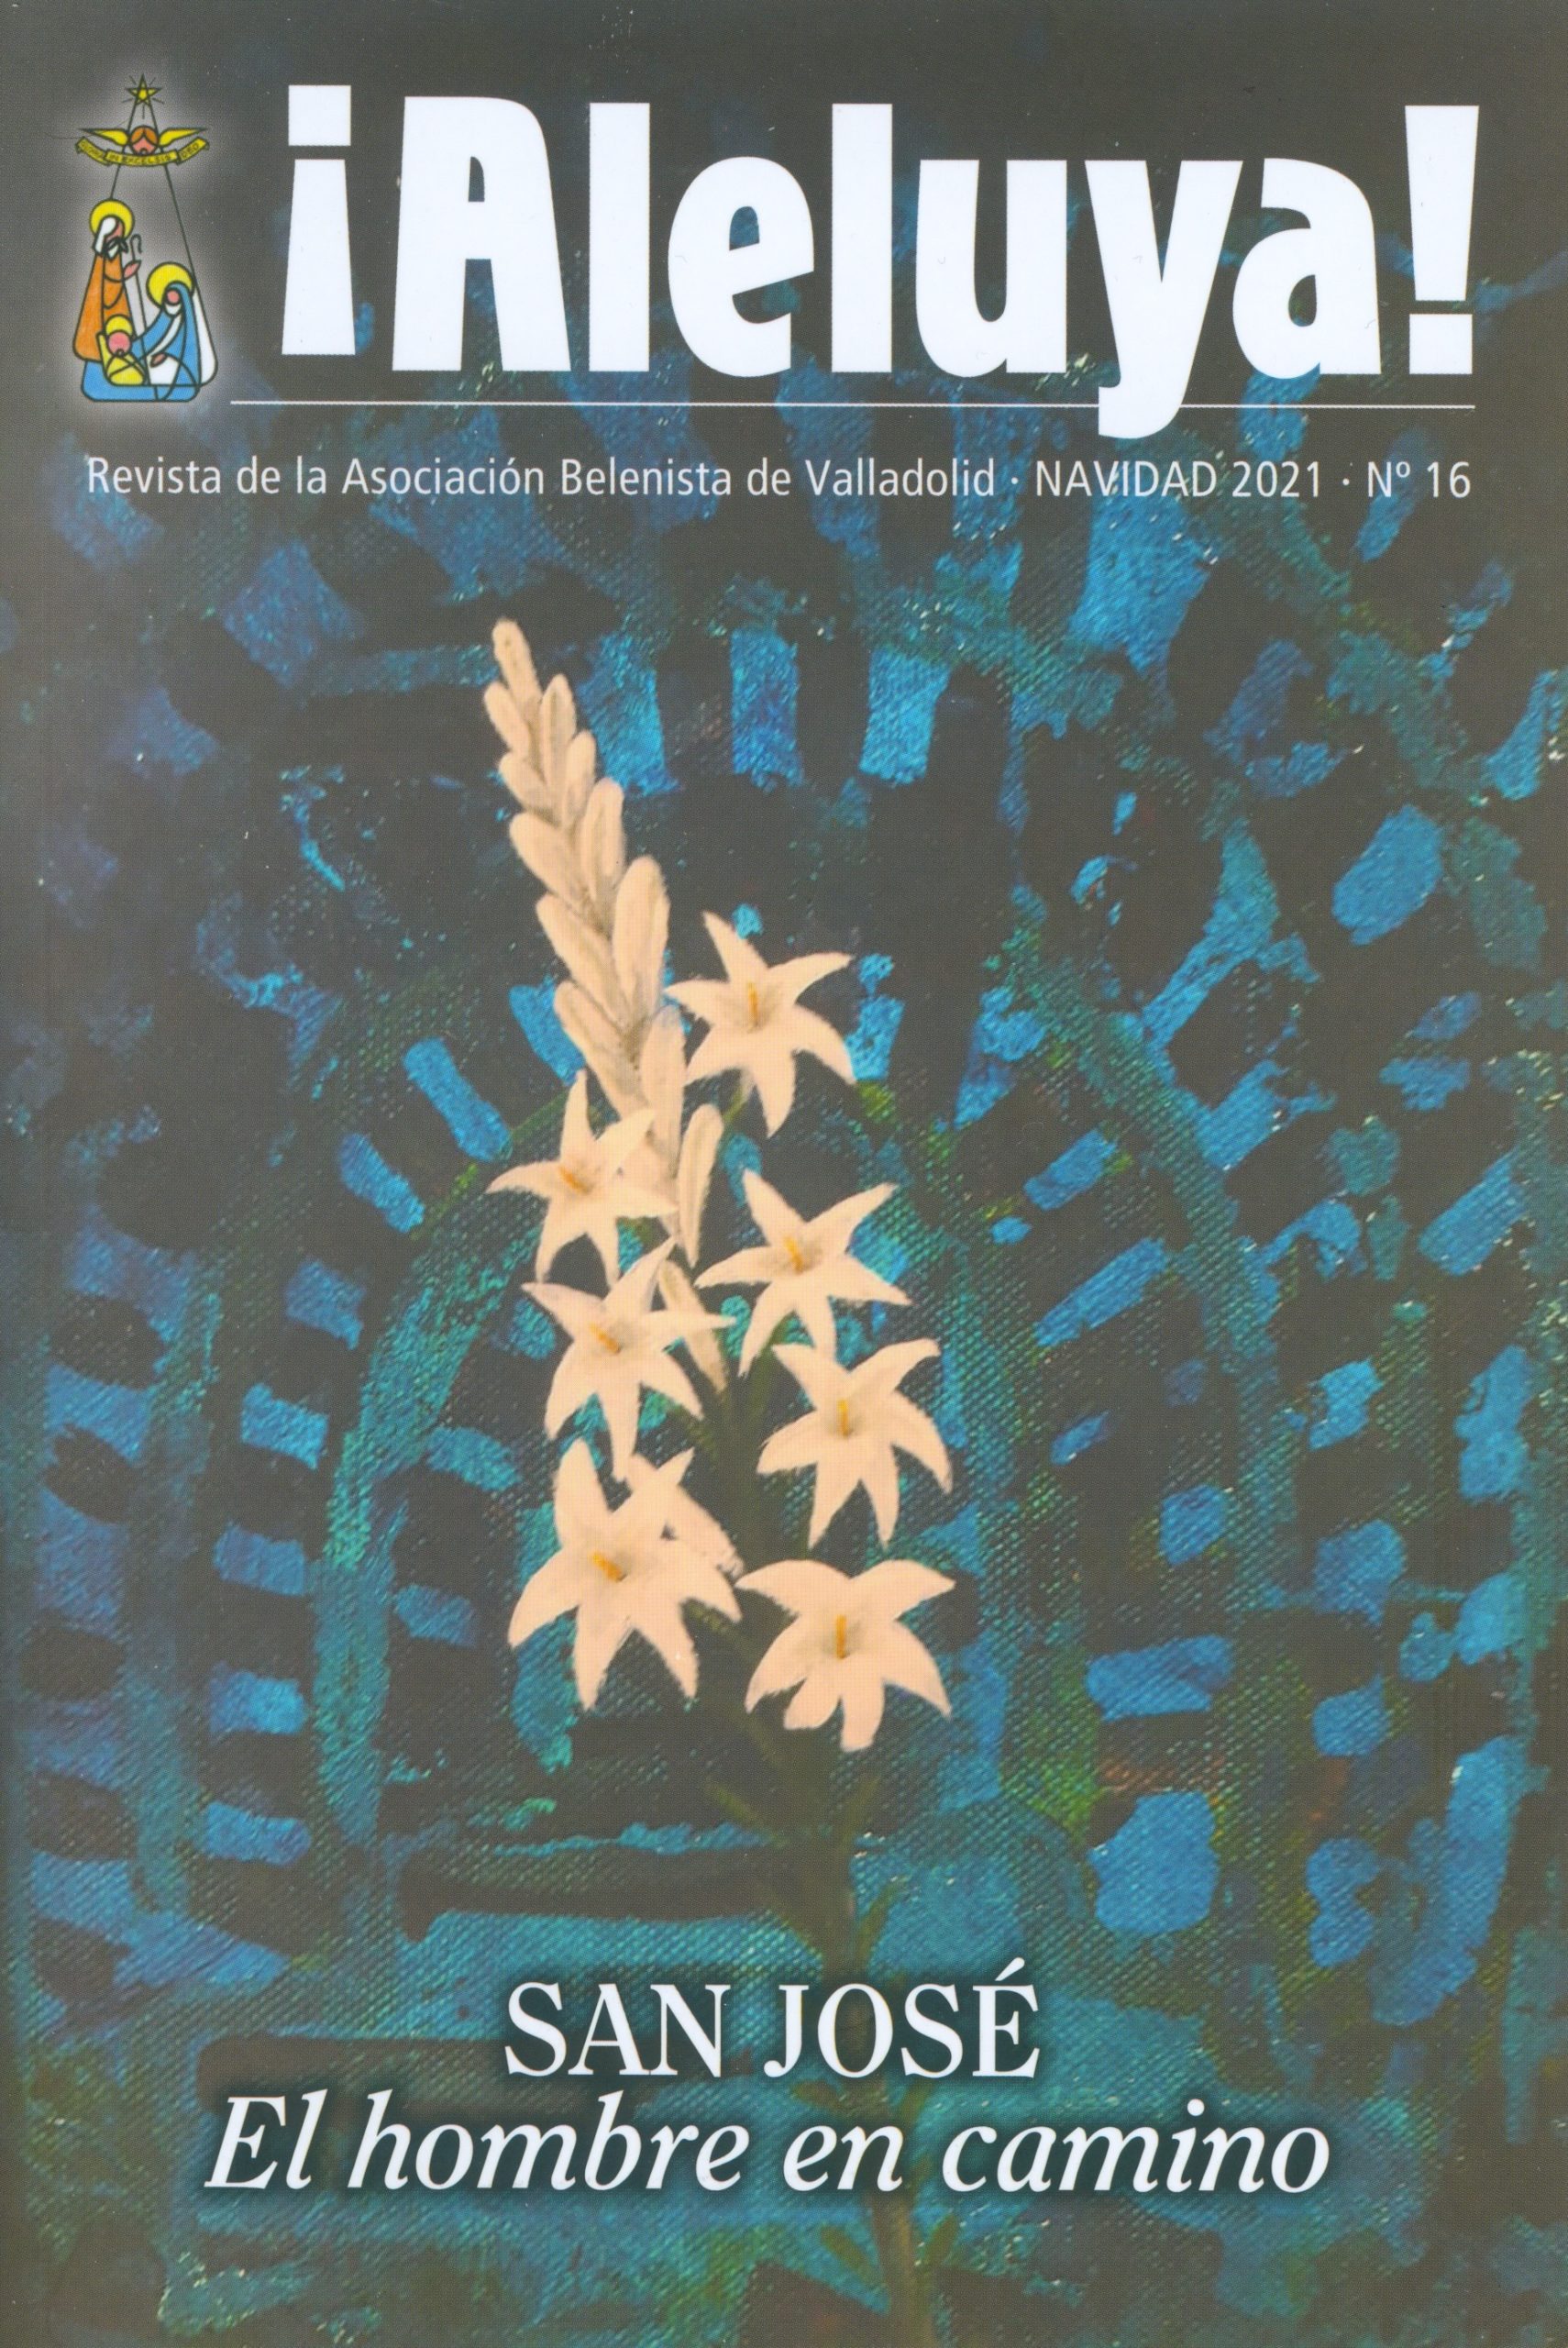 Portada de la revista ¡Aleluya! n.º 16 - Asociación Belenista de Valladolid (2021)